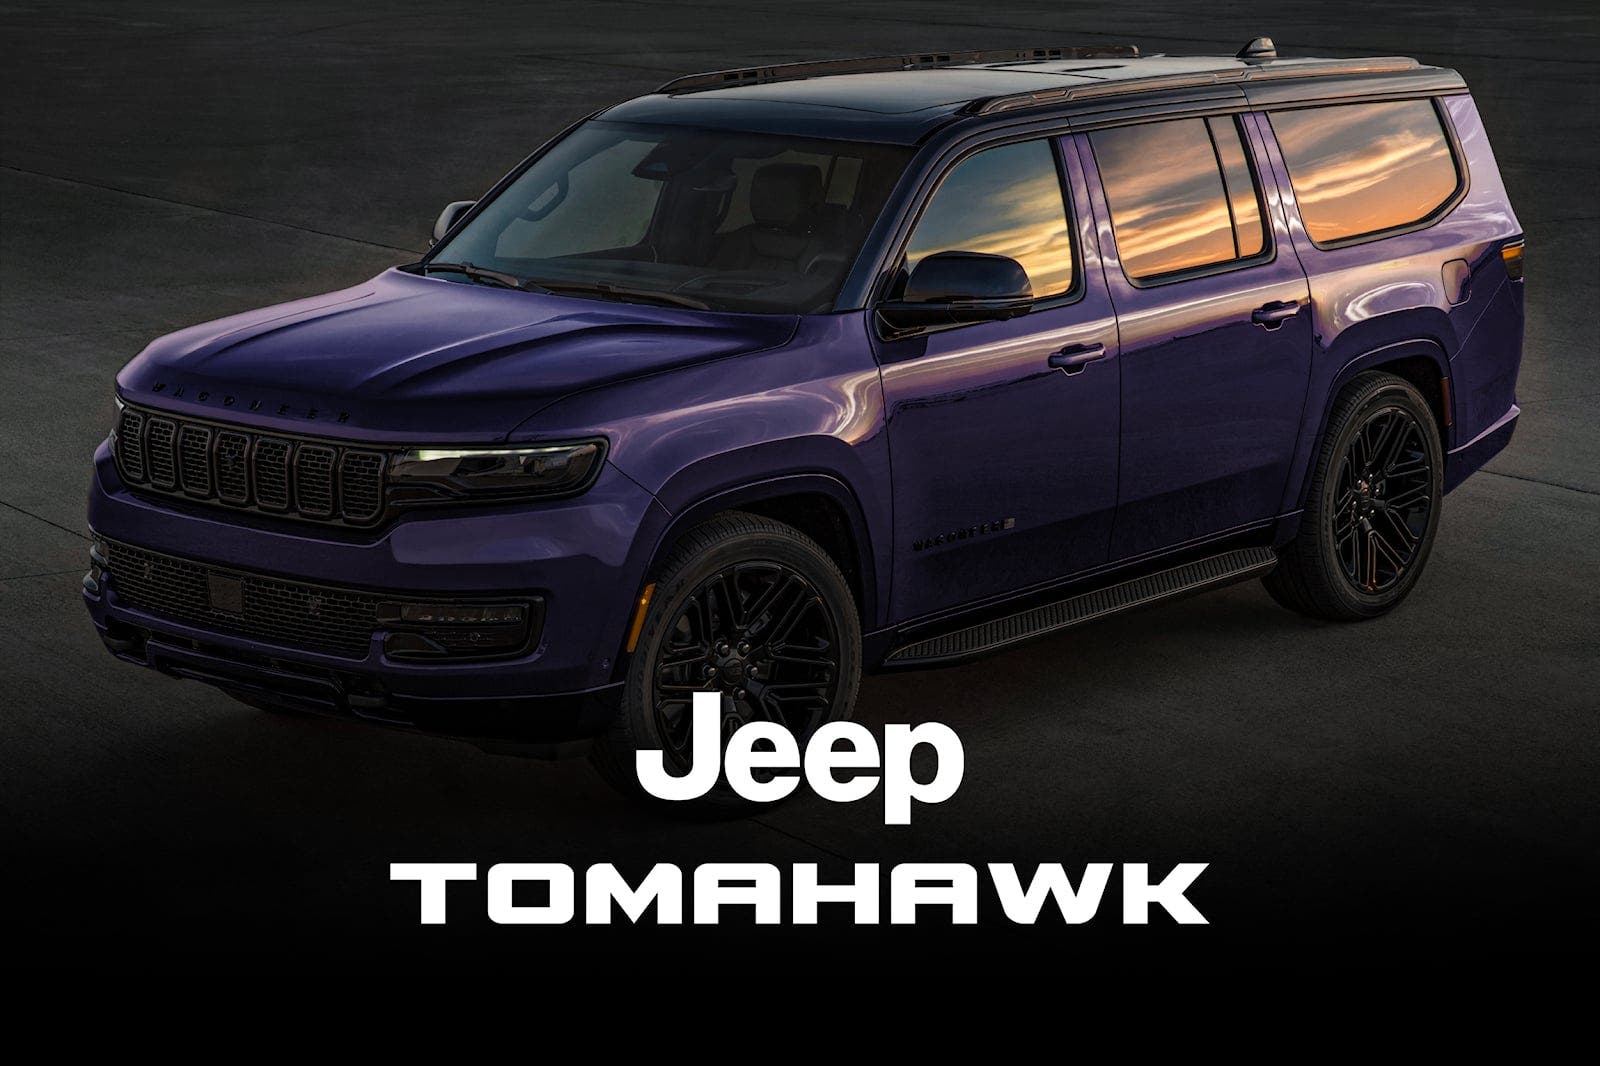 Jeep Tomahawk in arrivo un nuovo SUV? ClubAlfa.it